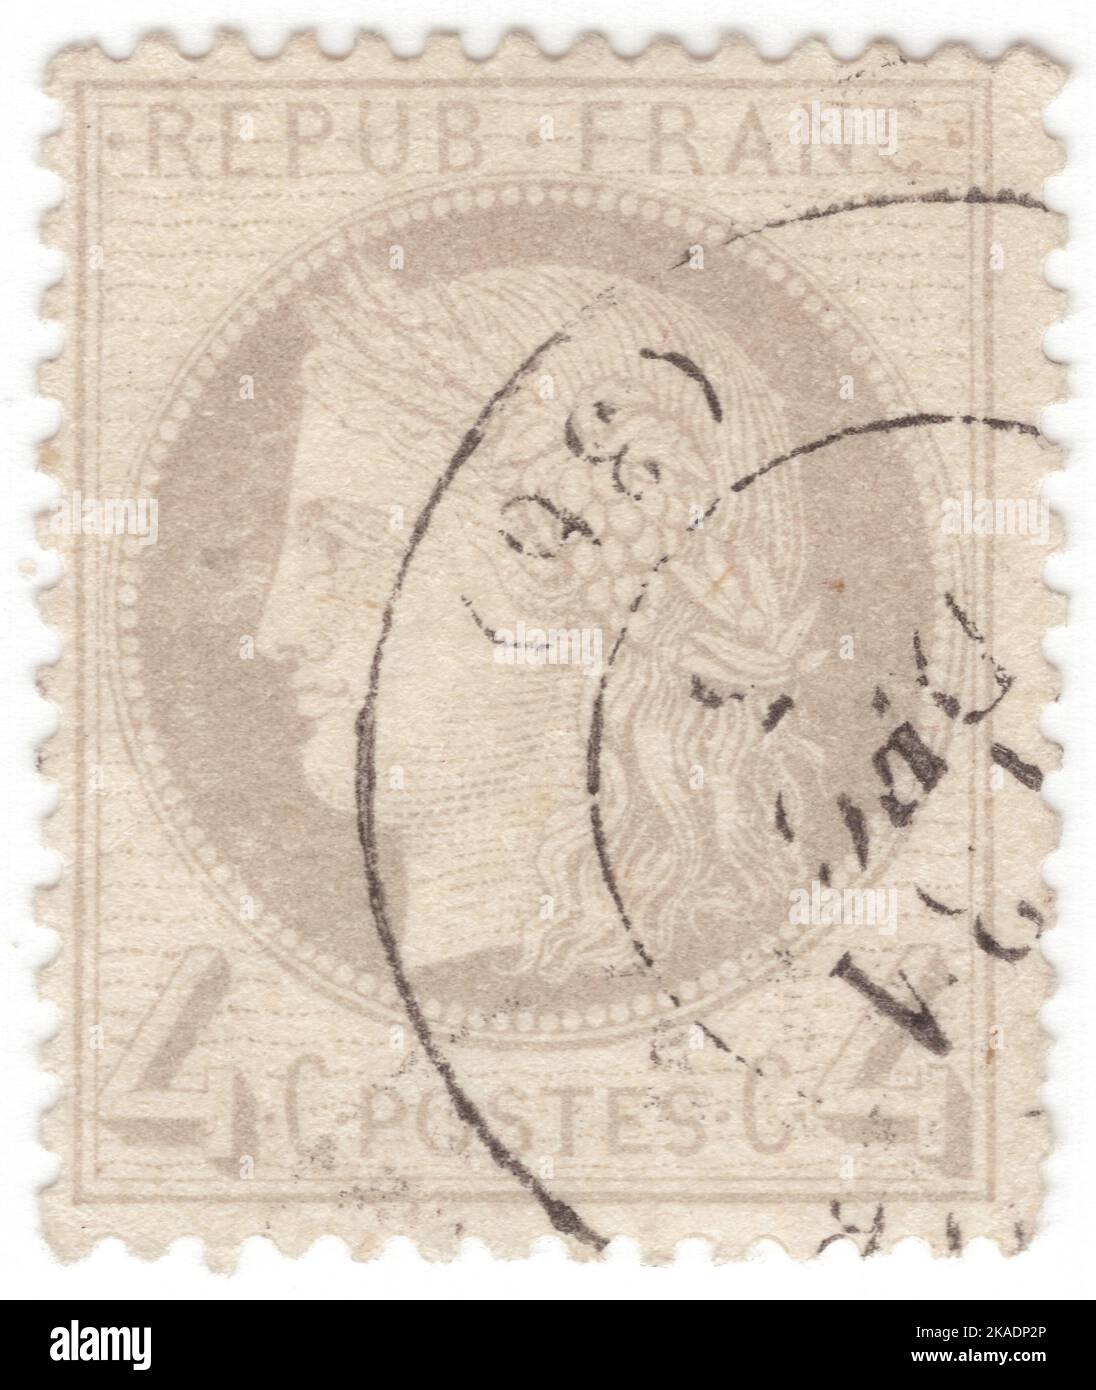 FRANCIA - 1870: Un sello de franqueo gris de 4 centésimas que representa Ceres — Diosa de la agricultura, la fertilidad, los granos, la cosecha, la maternidad, la tierra, y cultivó las cosechas Foto de stock